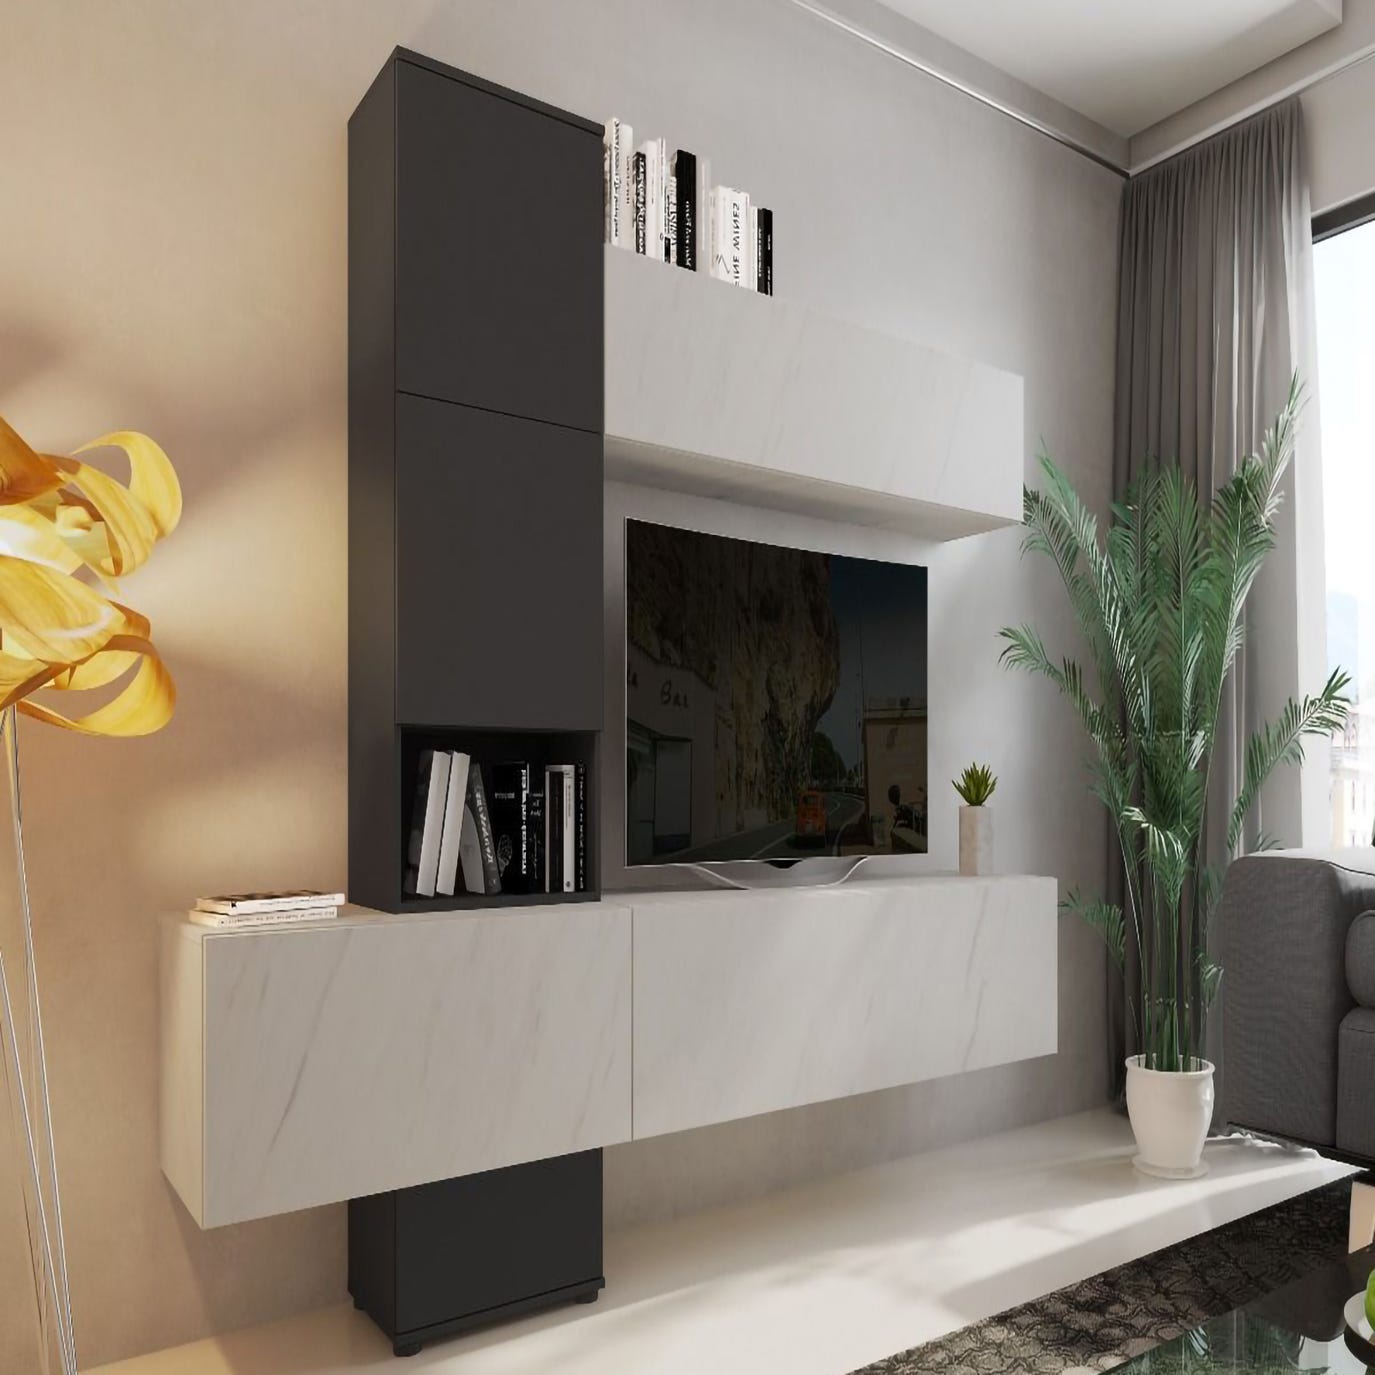 Mueble de salón, mueble TV con muebles altos, salón moderno con efecto  mármol de Carrara, 240x50xh196 cm, color blanco y antracita